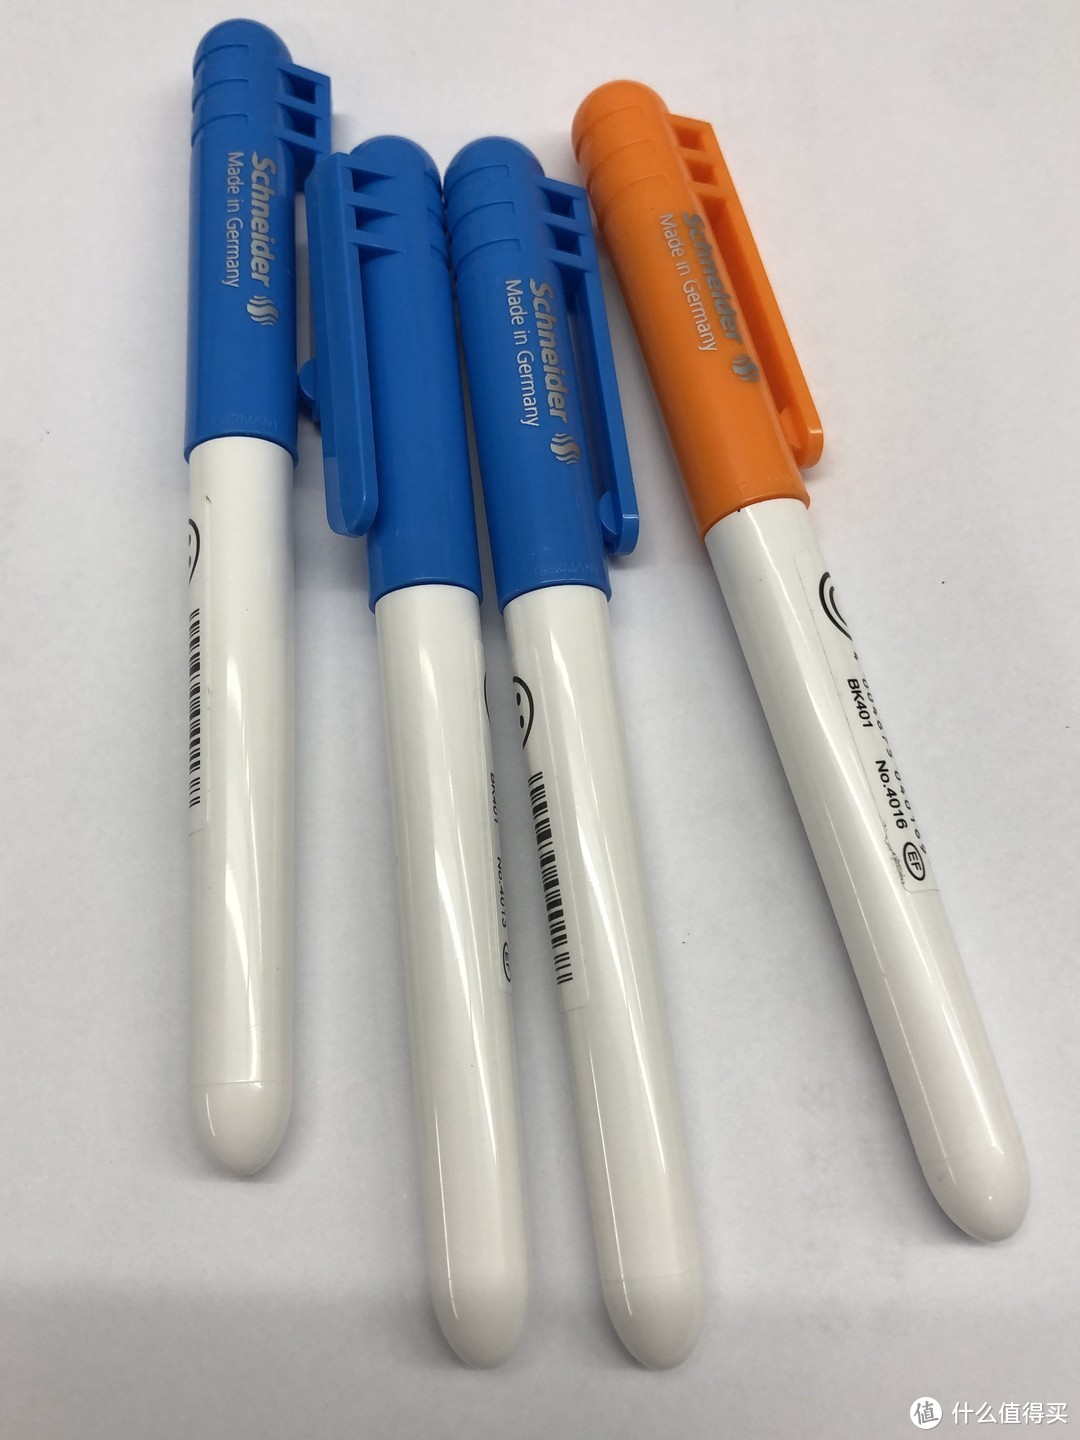 施耐德BK401钢笔，墨囊式的，方便更换，学生必备。量大15元一支还是可以做到的，一般式20元一支，性价比很高，推荐。